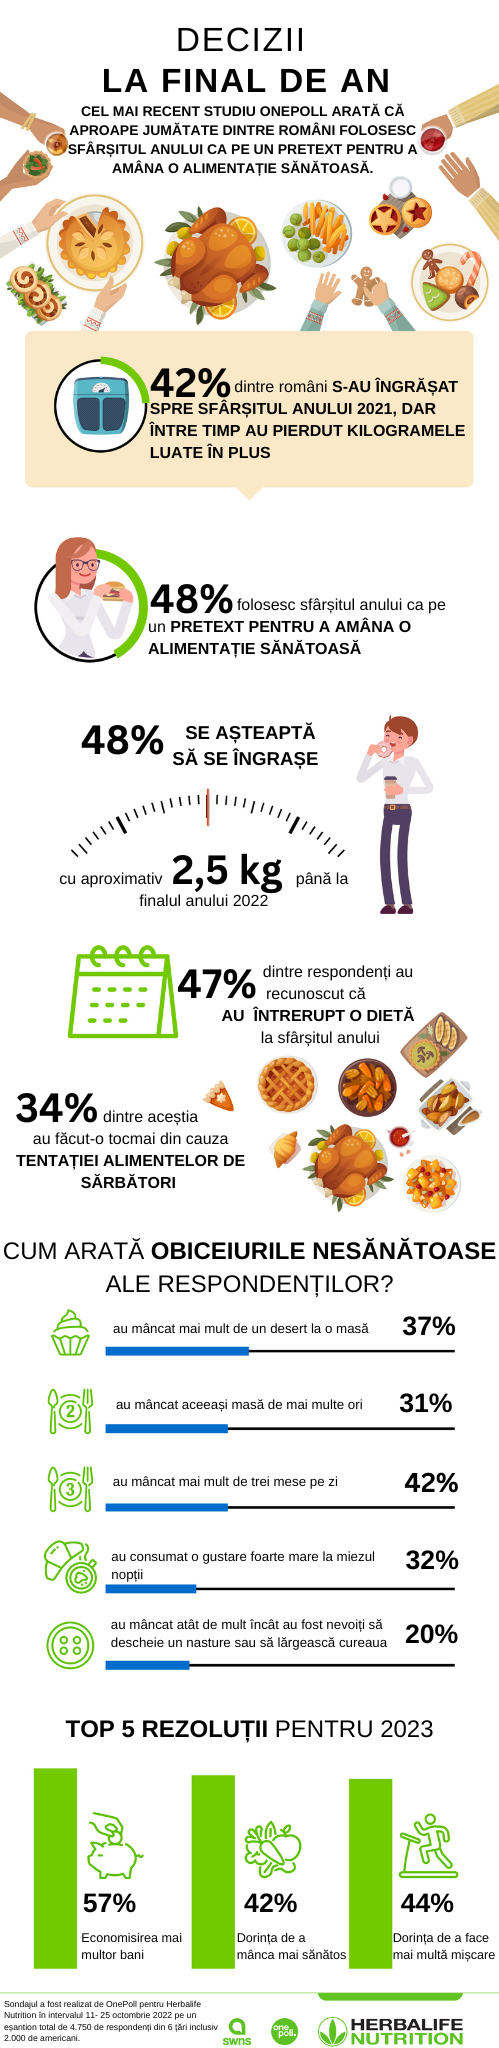 Aproape jumătate dintre români folosesc sfârșitul anului ca pe un pretext pentru a amâna o alimentație sănătoasă